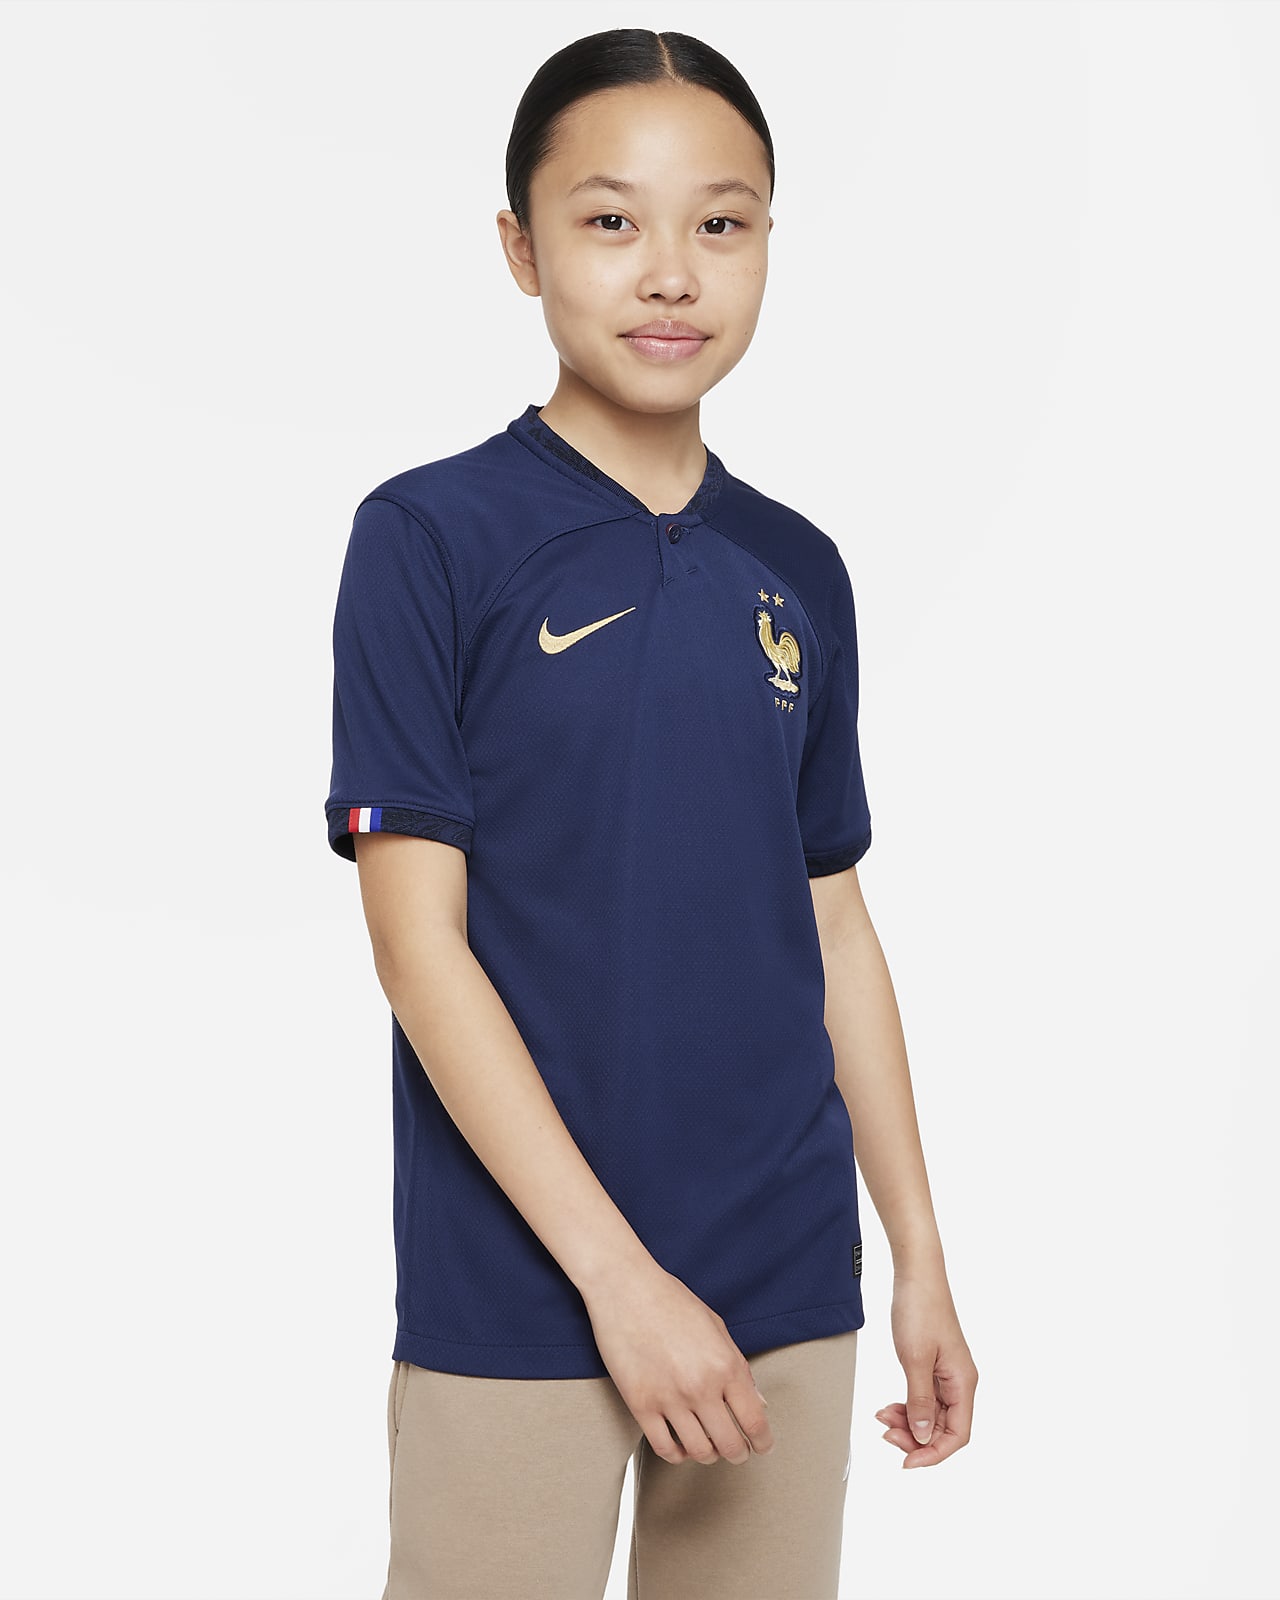 FFF 2022/23 Stadium Home Older Kids' Nike Dri-FIT Football Shirt